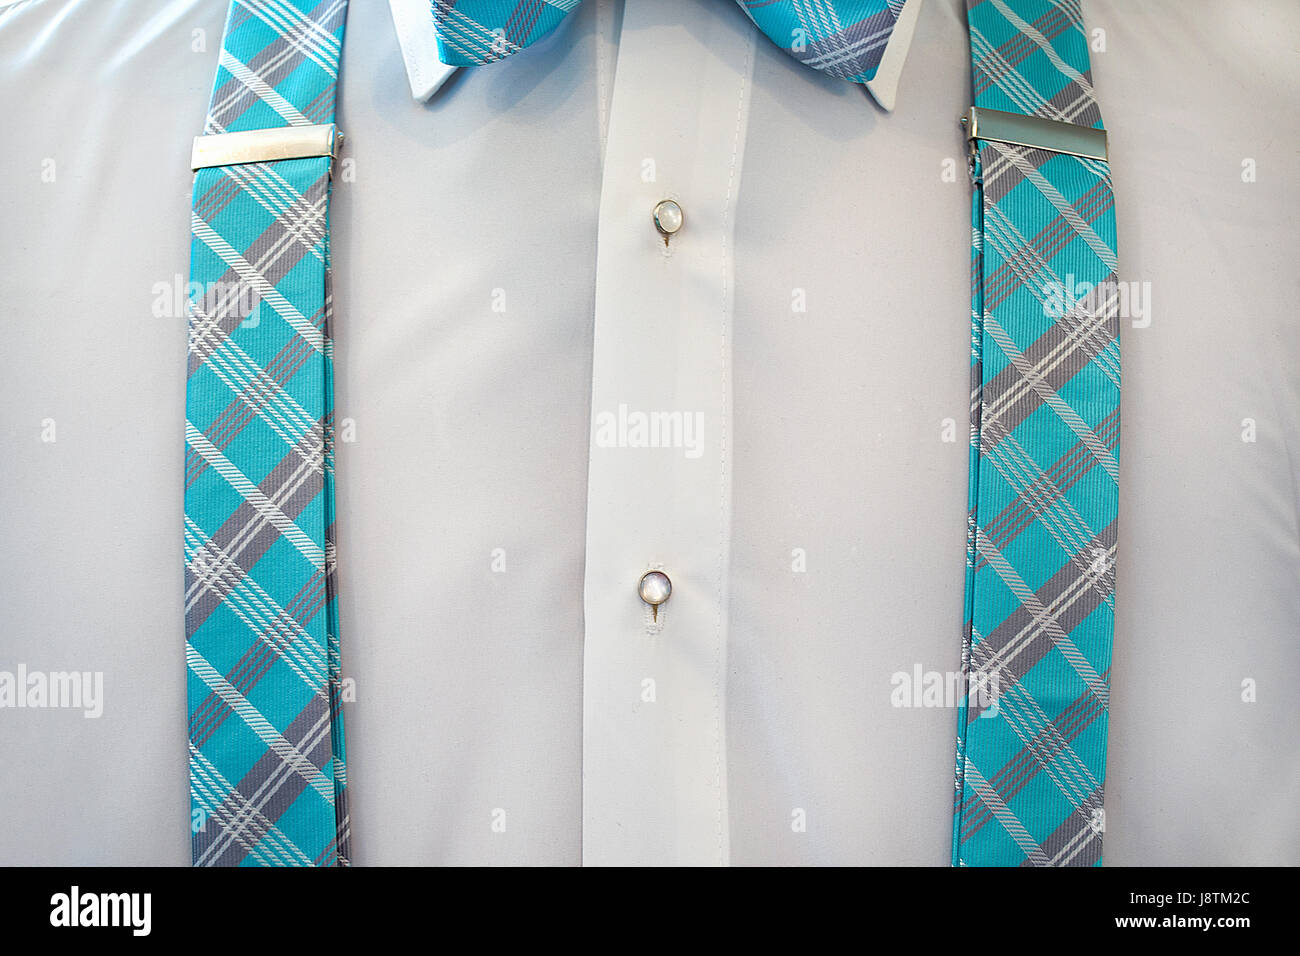 Chemise de smoking blanc avec bretelles à carreaux turquoise et dentelle  Photo Stock - Alamy